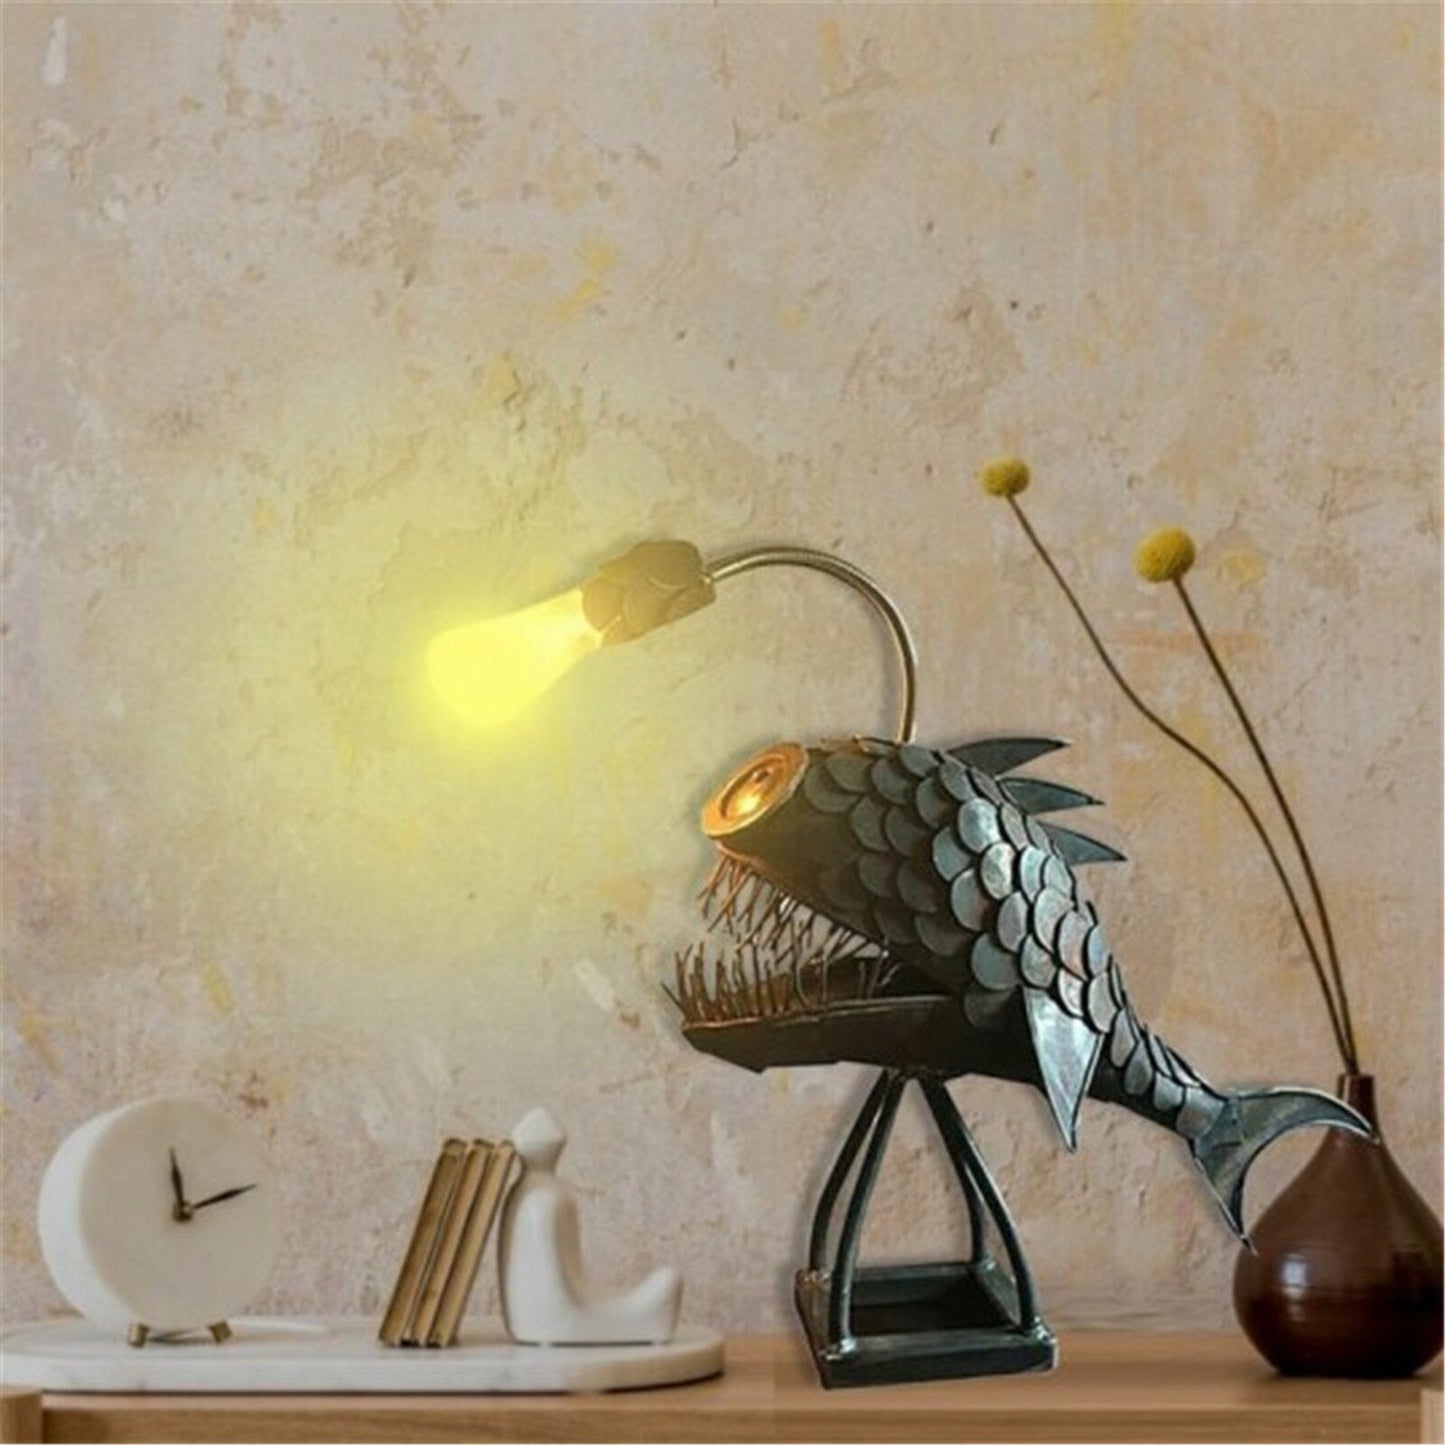 Lampu meja retro lampu pemancing ikan dengan lampu lampu kepala lampu fleksibel untuk barangan rumah kafe rumah hiasan hiasan